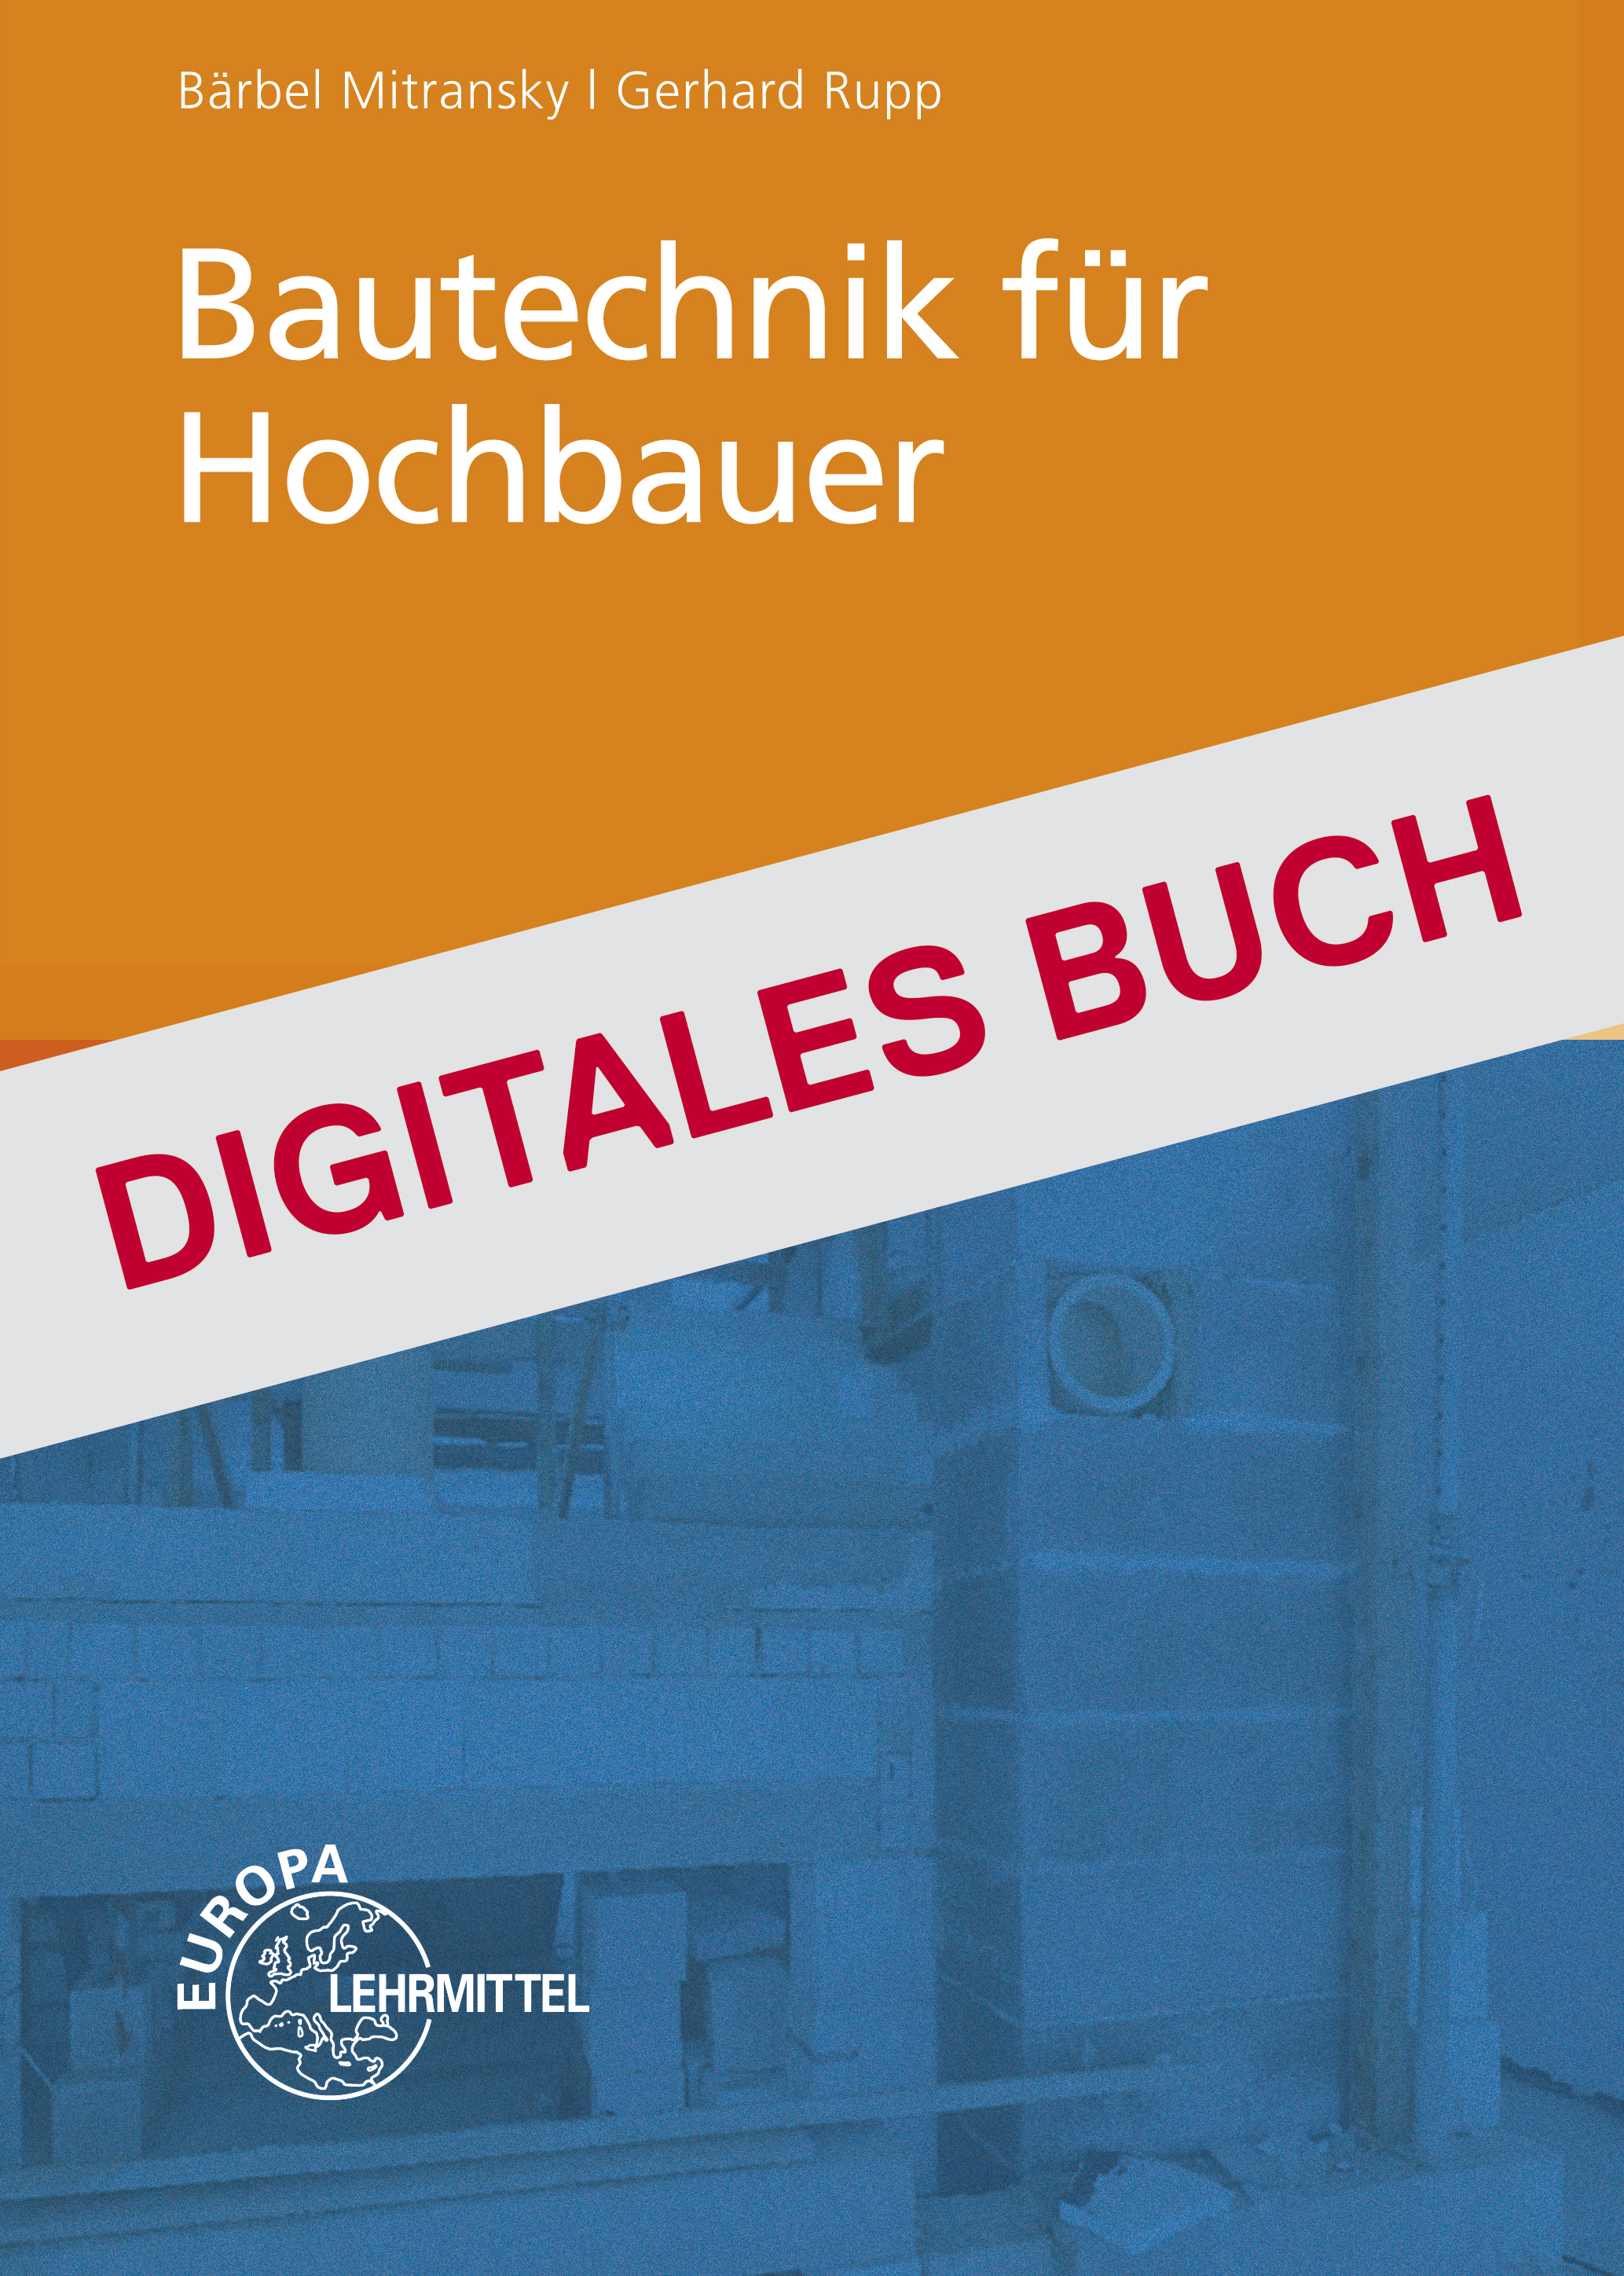 Bautechnik für Hochbauer - Digitales Buch